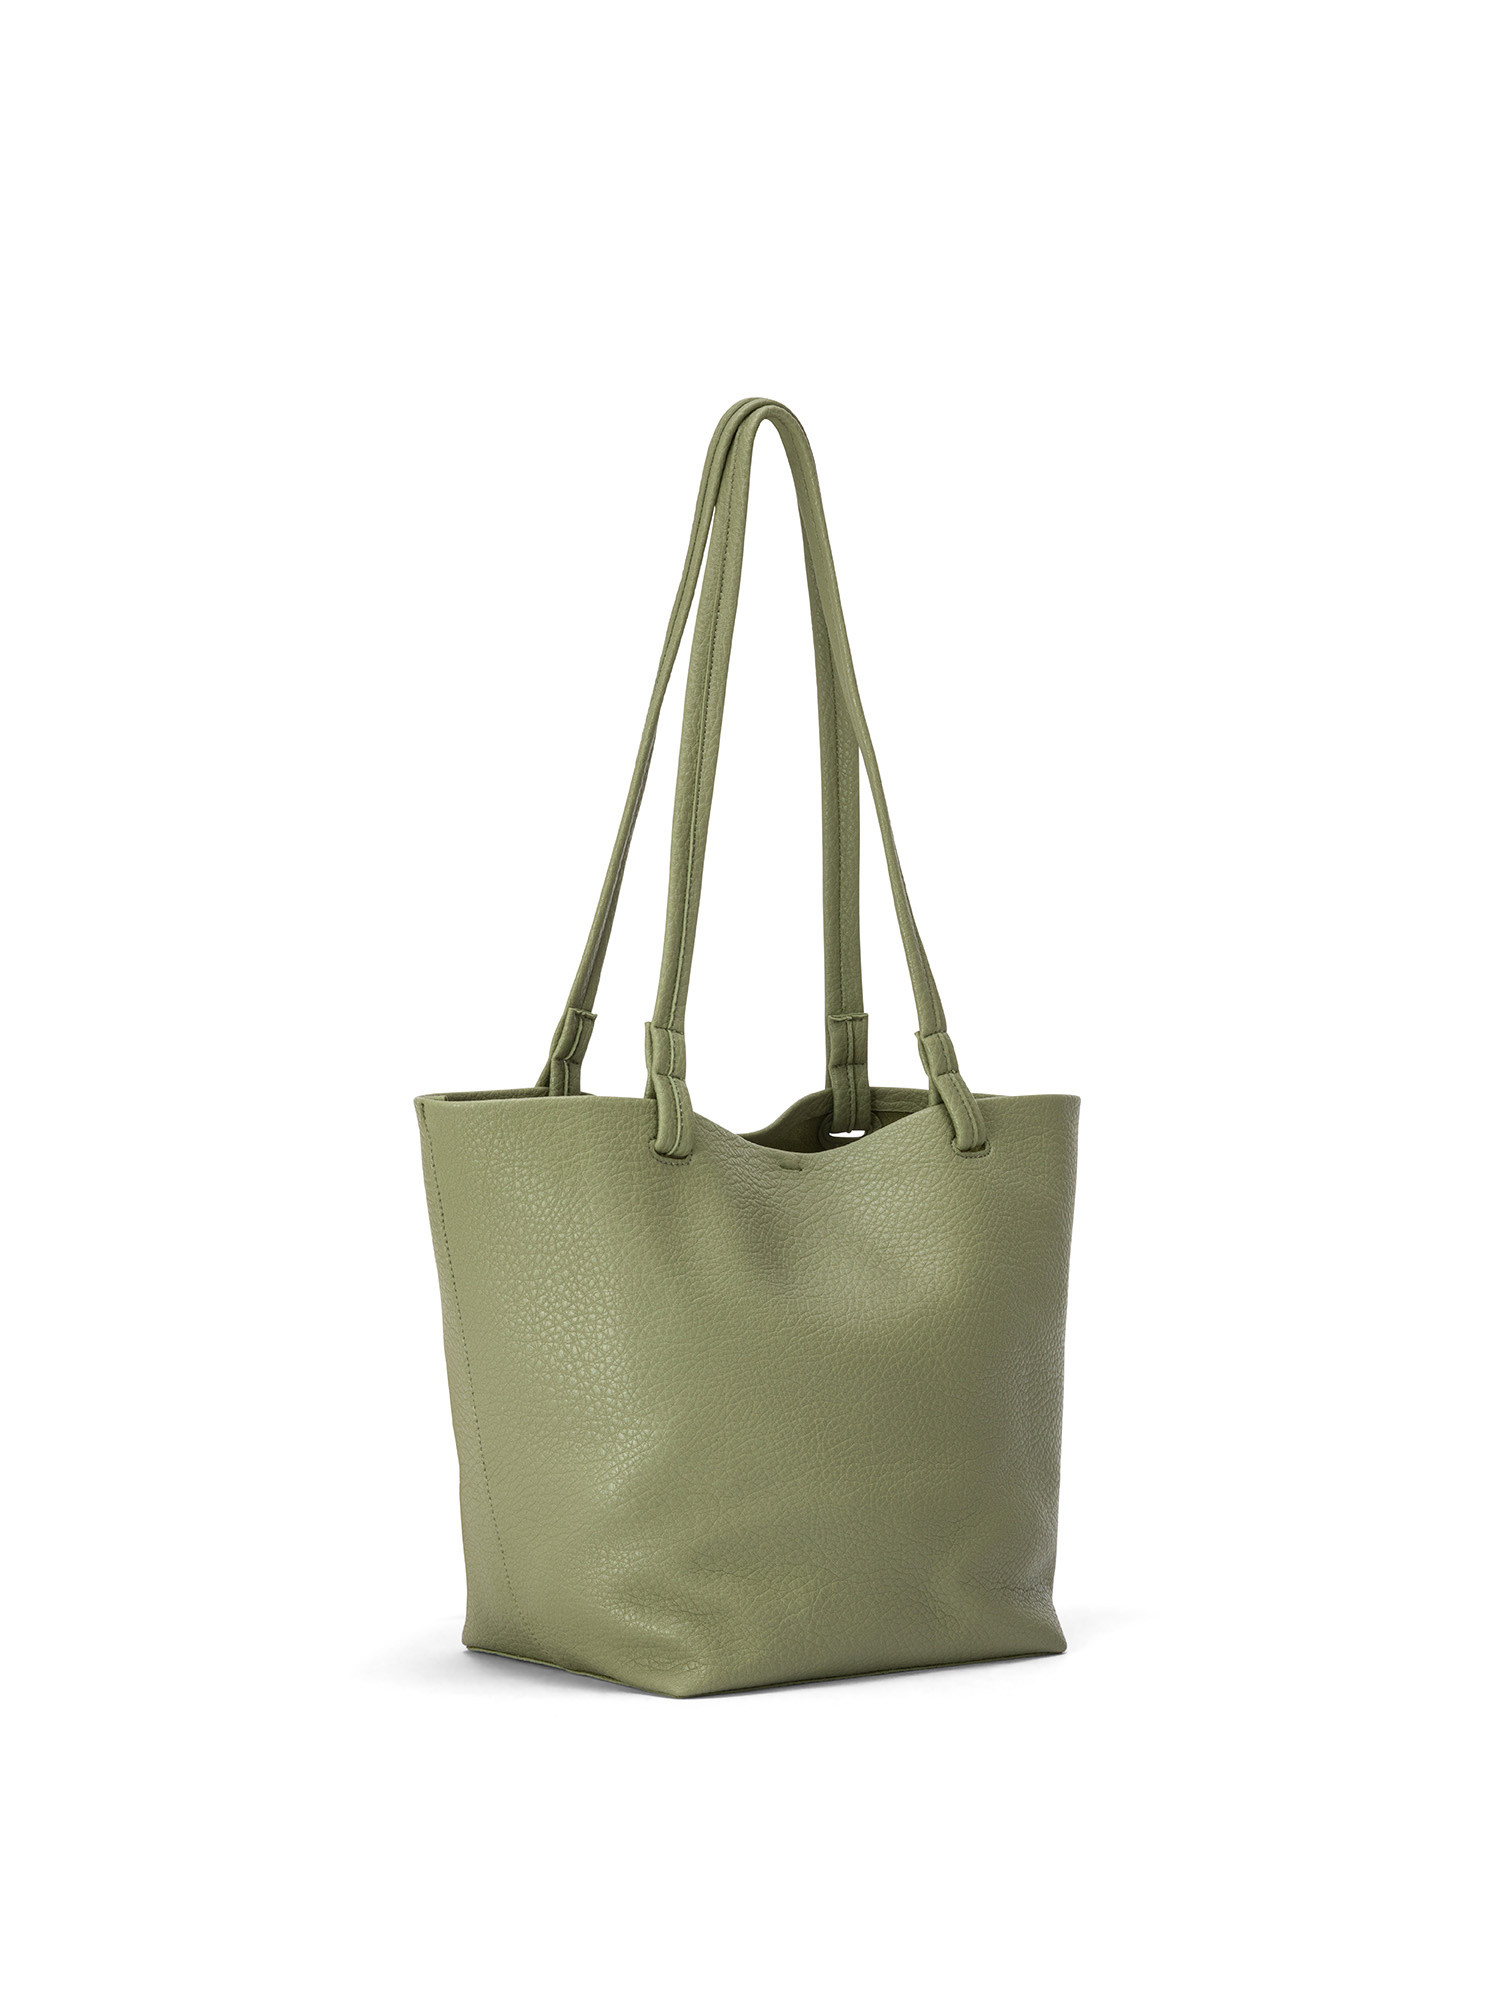 Koan - Shopping bag, Green, large image number 1